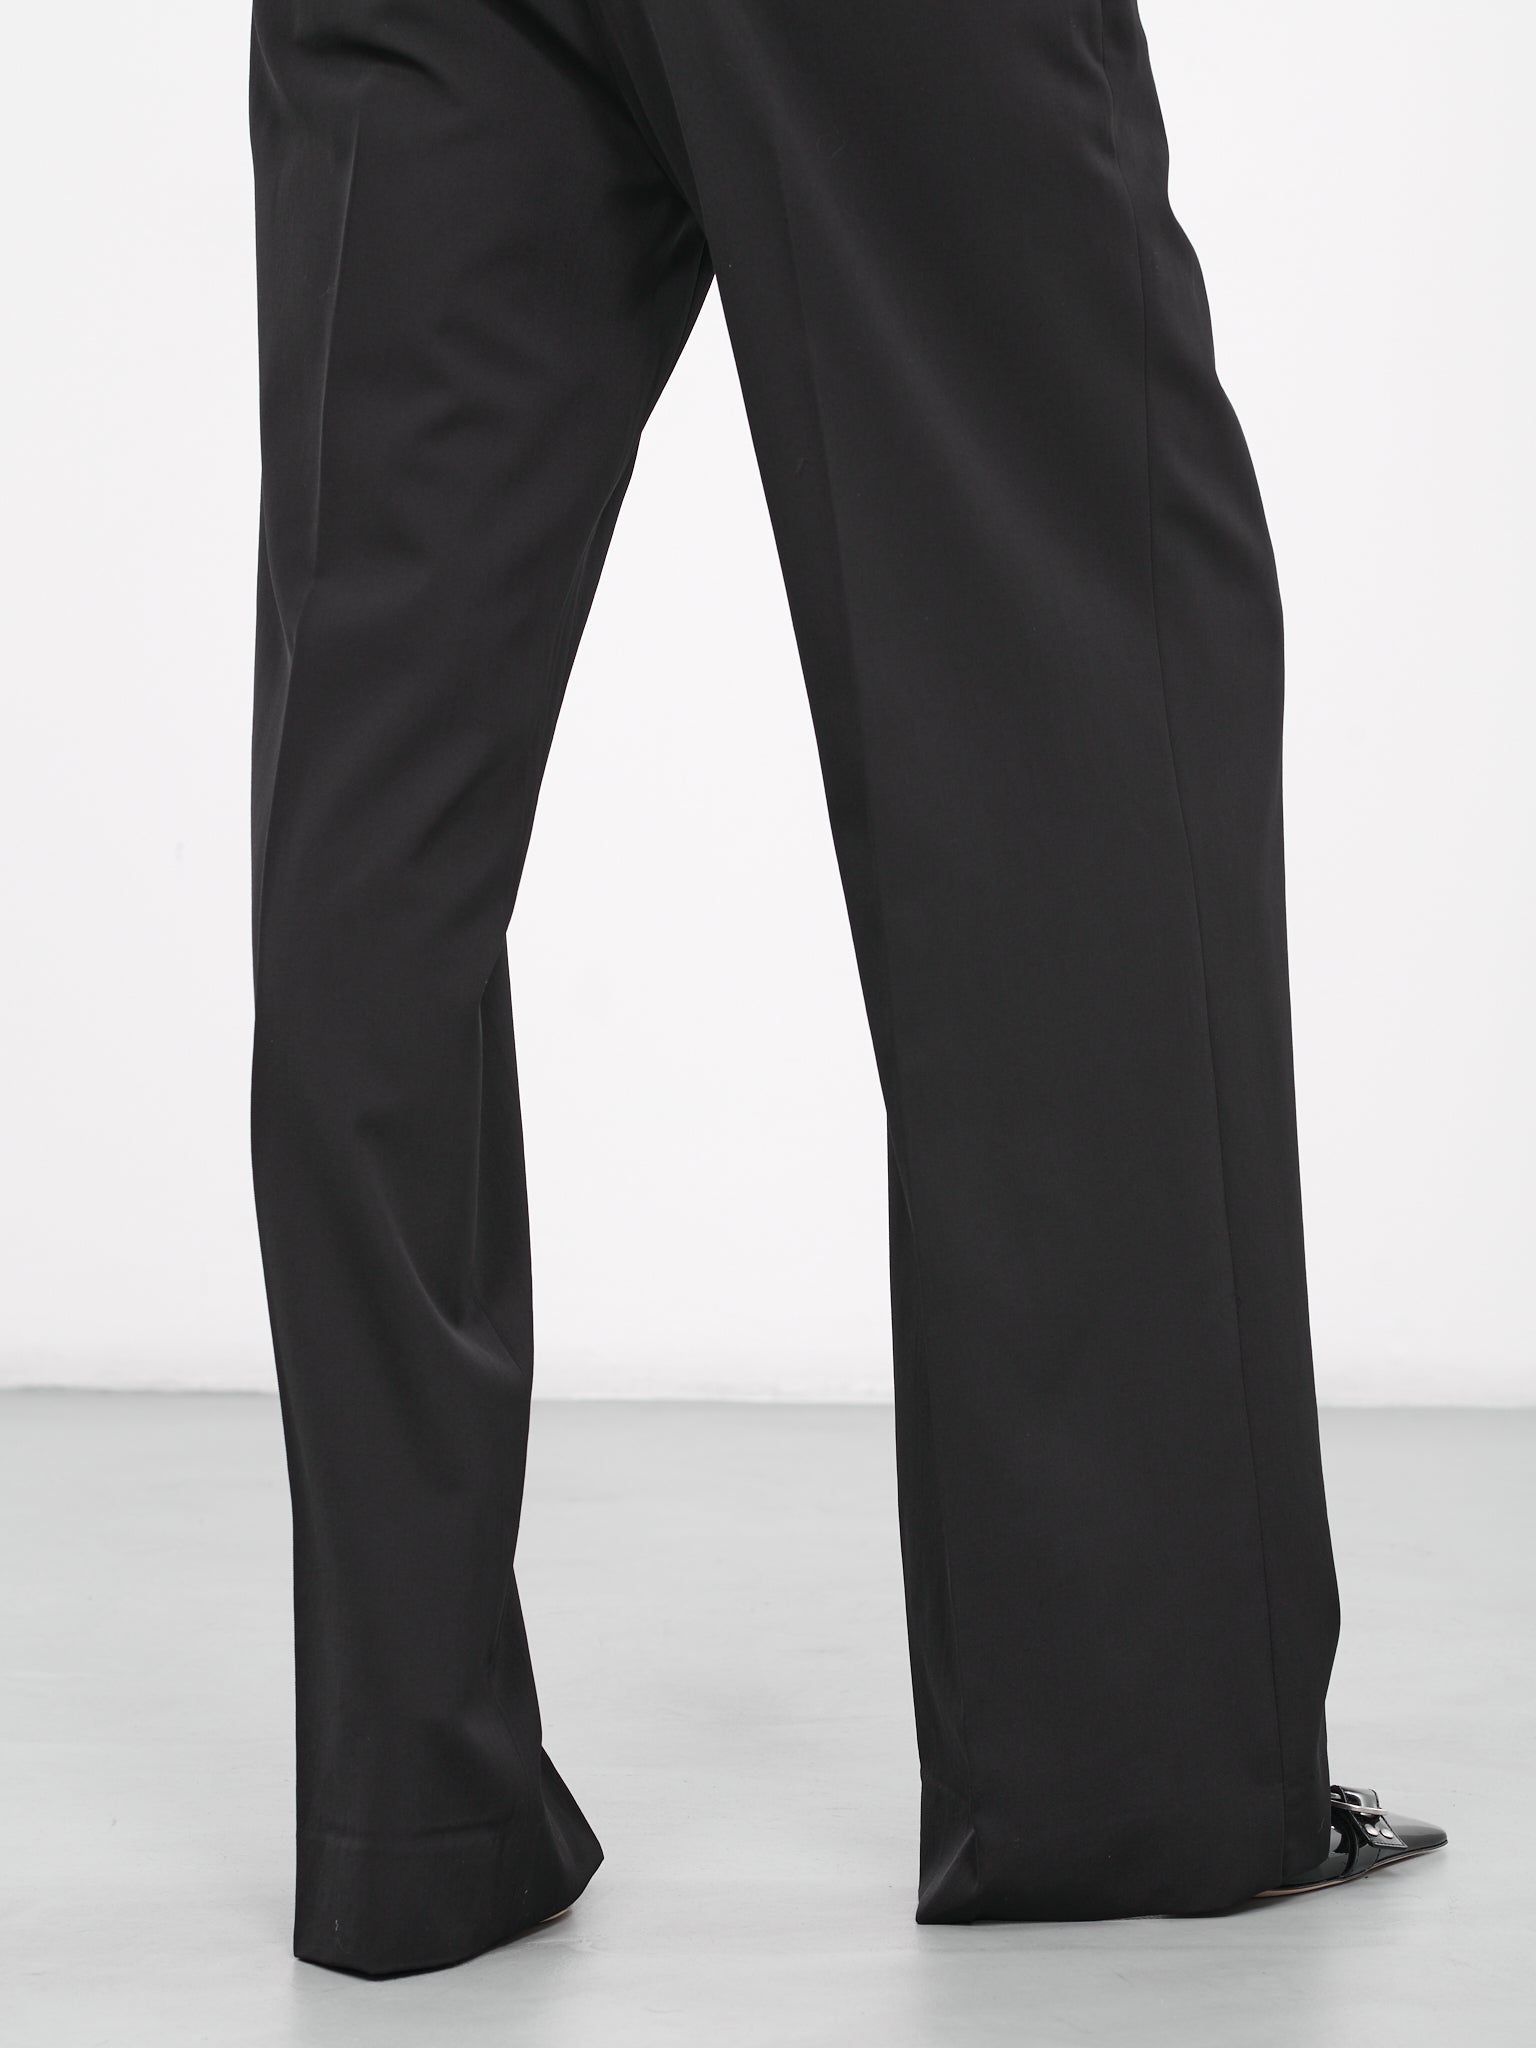 Buy Black Wool Slim Fit Pants for Men Online at Fabindia | 20047095